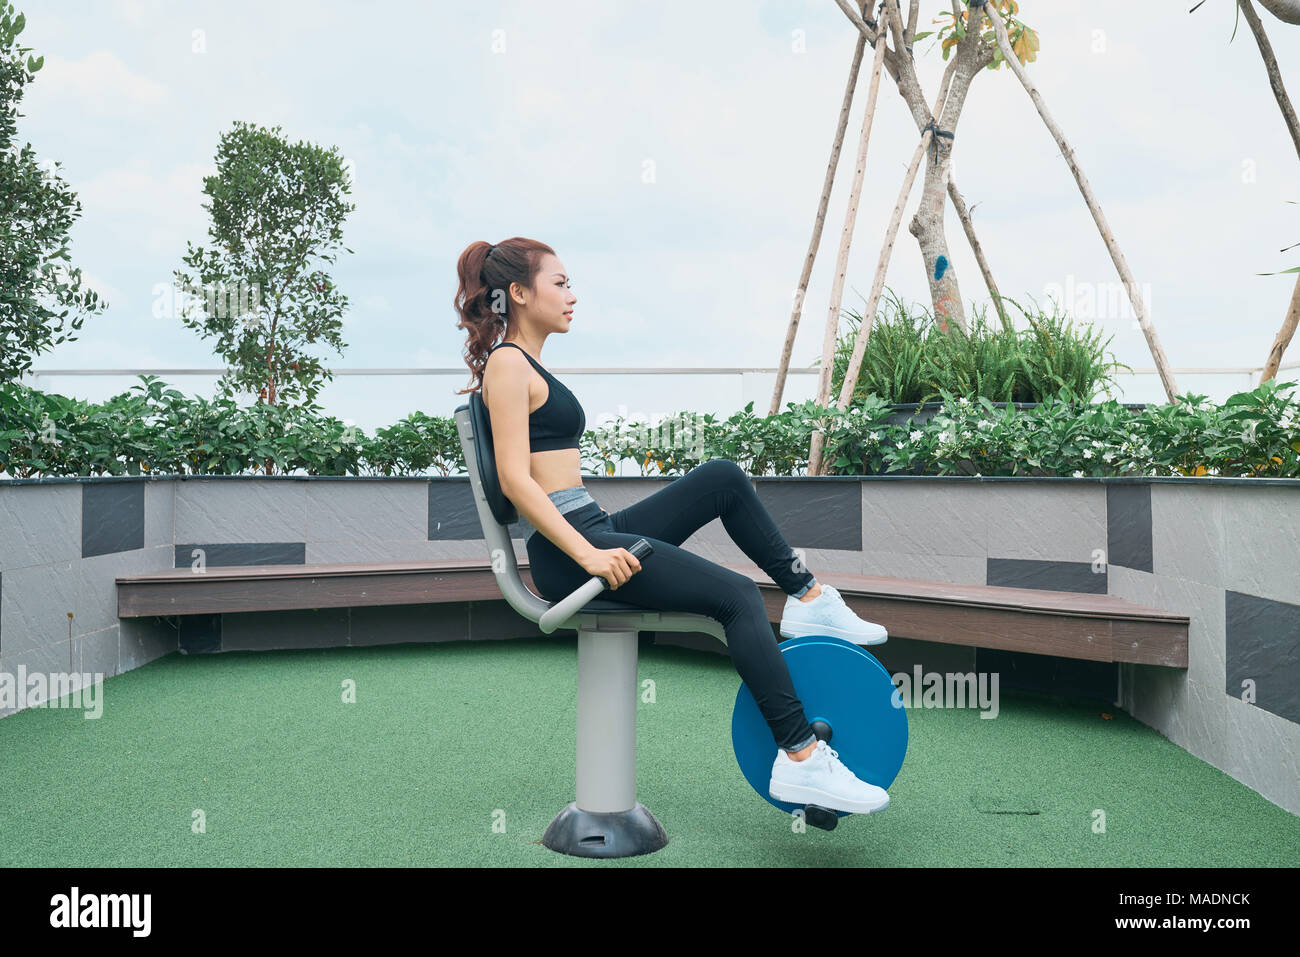 Asiatische Frau Training im freien Fitnessraum Spielplatz ausrüstung Stockfoto